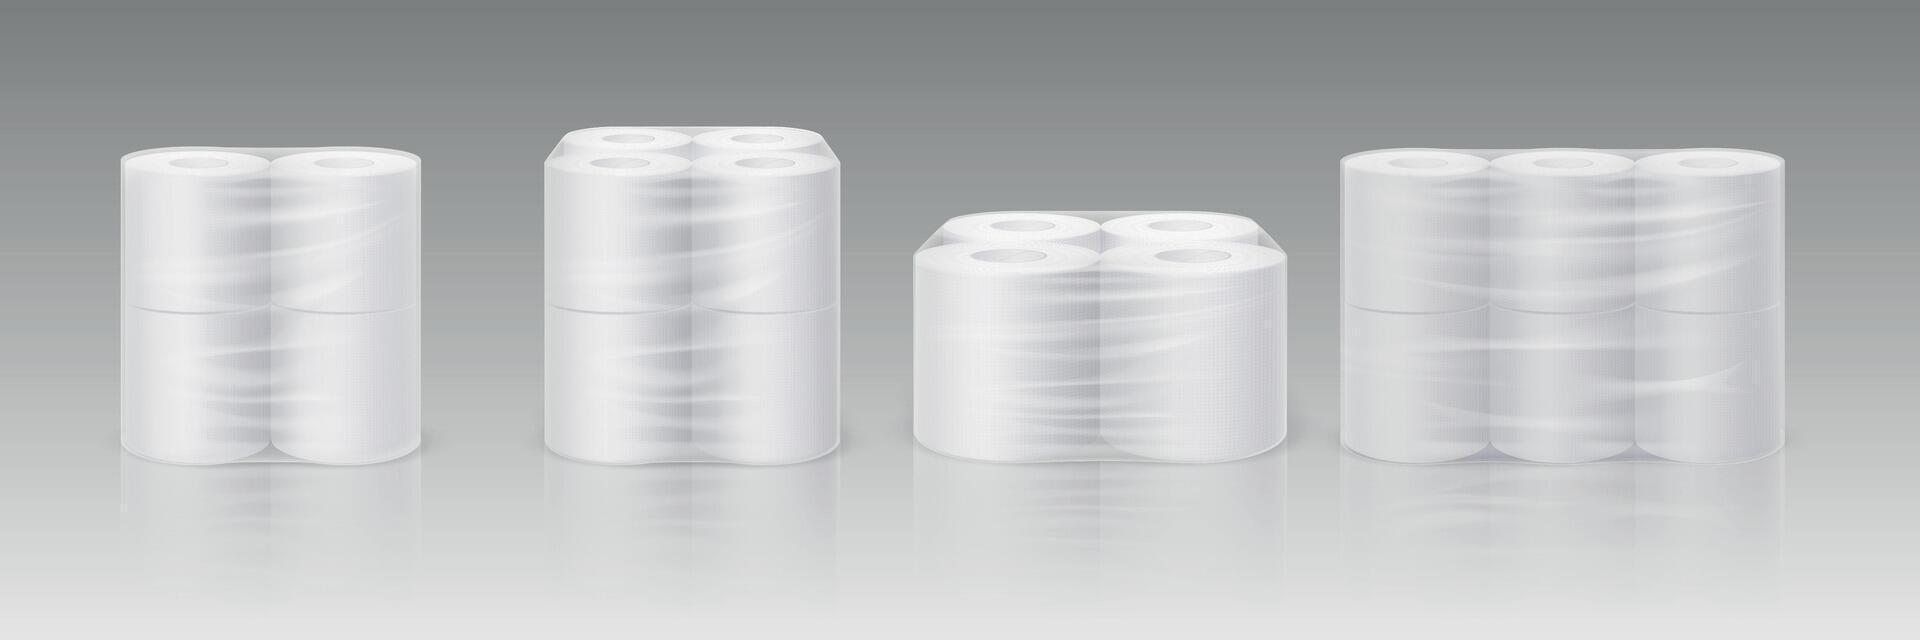 realistisch Weiß Toilette Papier Rollen im Plastik Pack Attrappe, Lehrmodell, Simulation. Hygiene Reinigung Gewebe im transparent Paket. Sanft saugfähig Handtücher Vektor einstellen